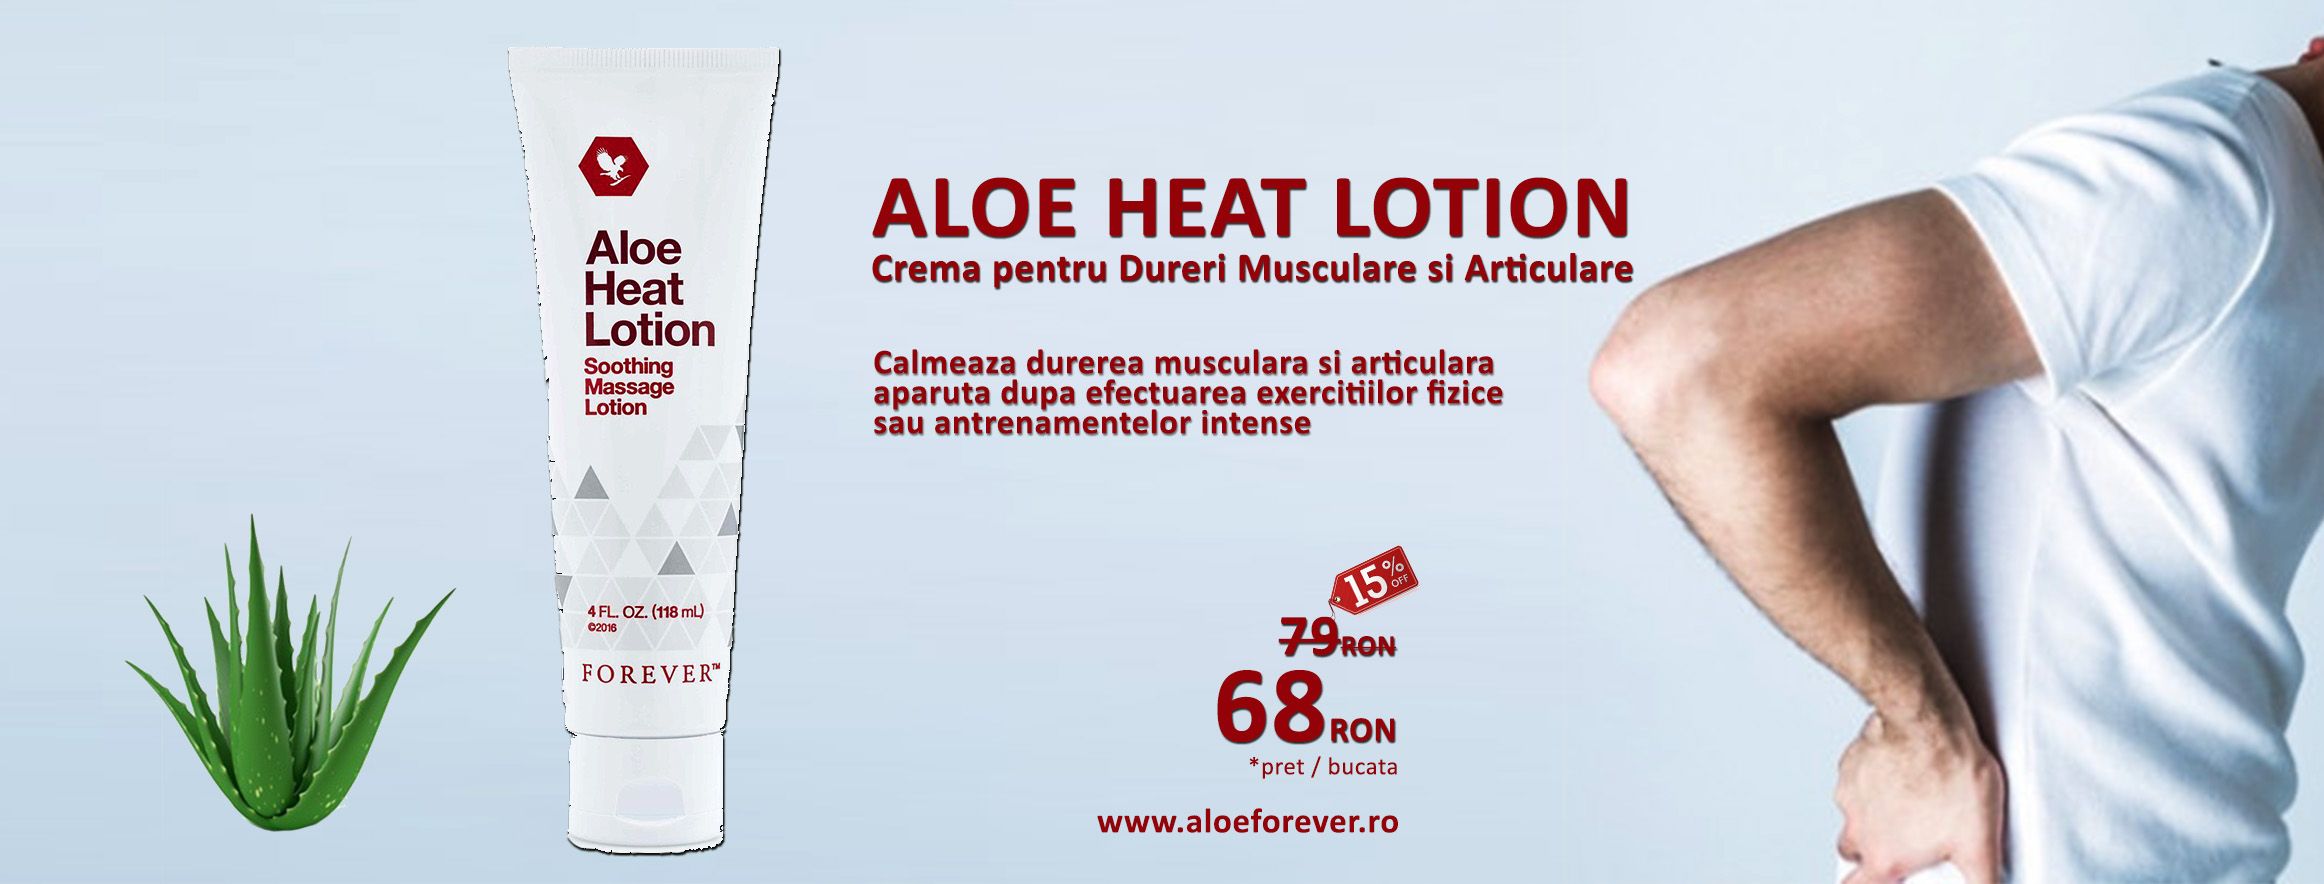 Unguent pentru ameliorarea reumatismului Forever Aloe Heat Lotion PRET REDUS! | arhiva baltaciocarliapatru.ro